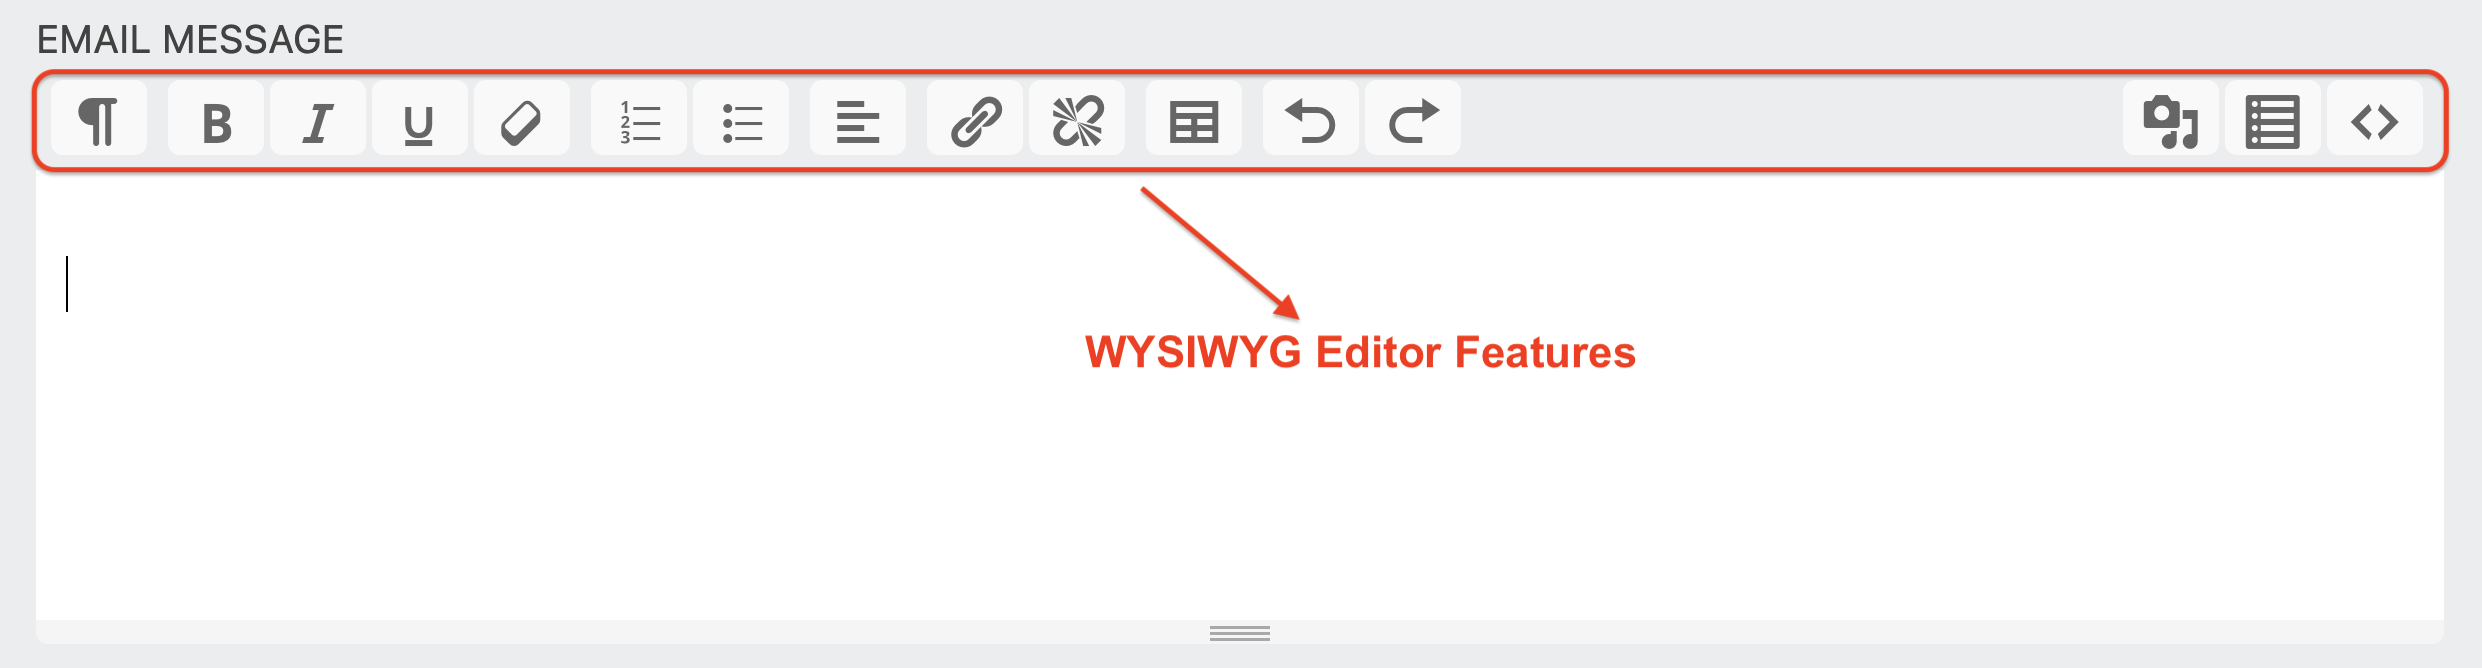 WYSIWYG Editor Features